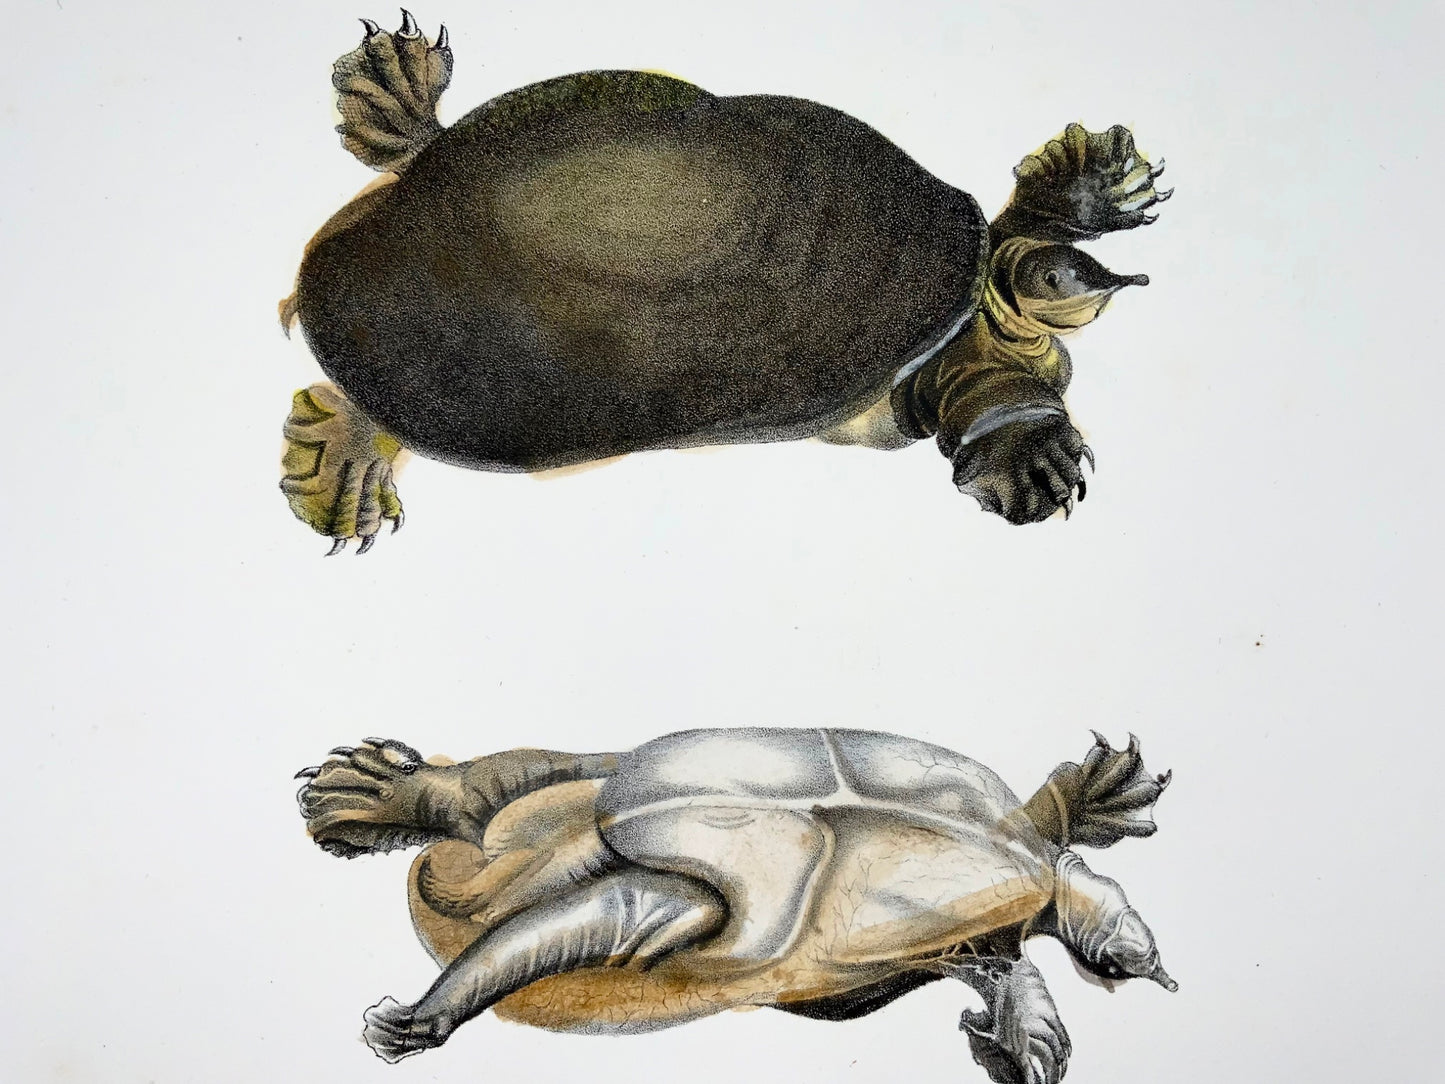 1833 Tortue molle de Floride, amphibiens, Schinz, lithographie colorée à la main